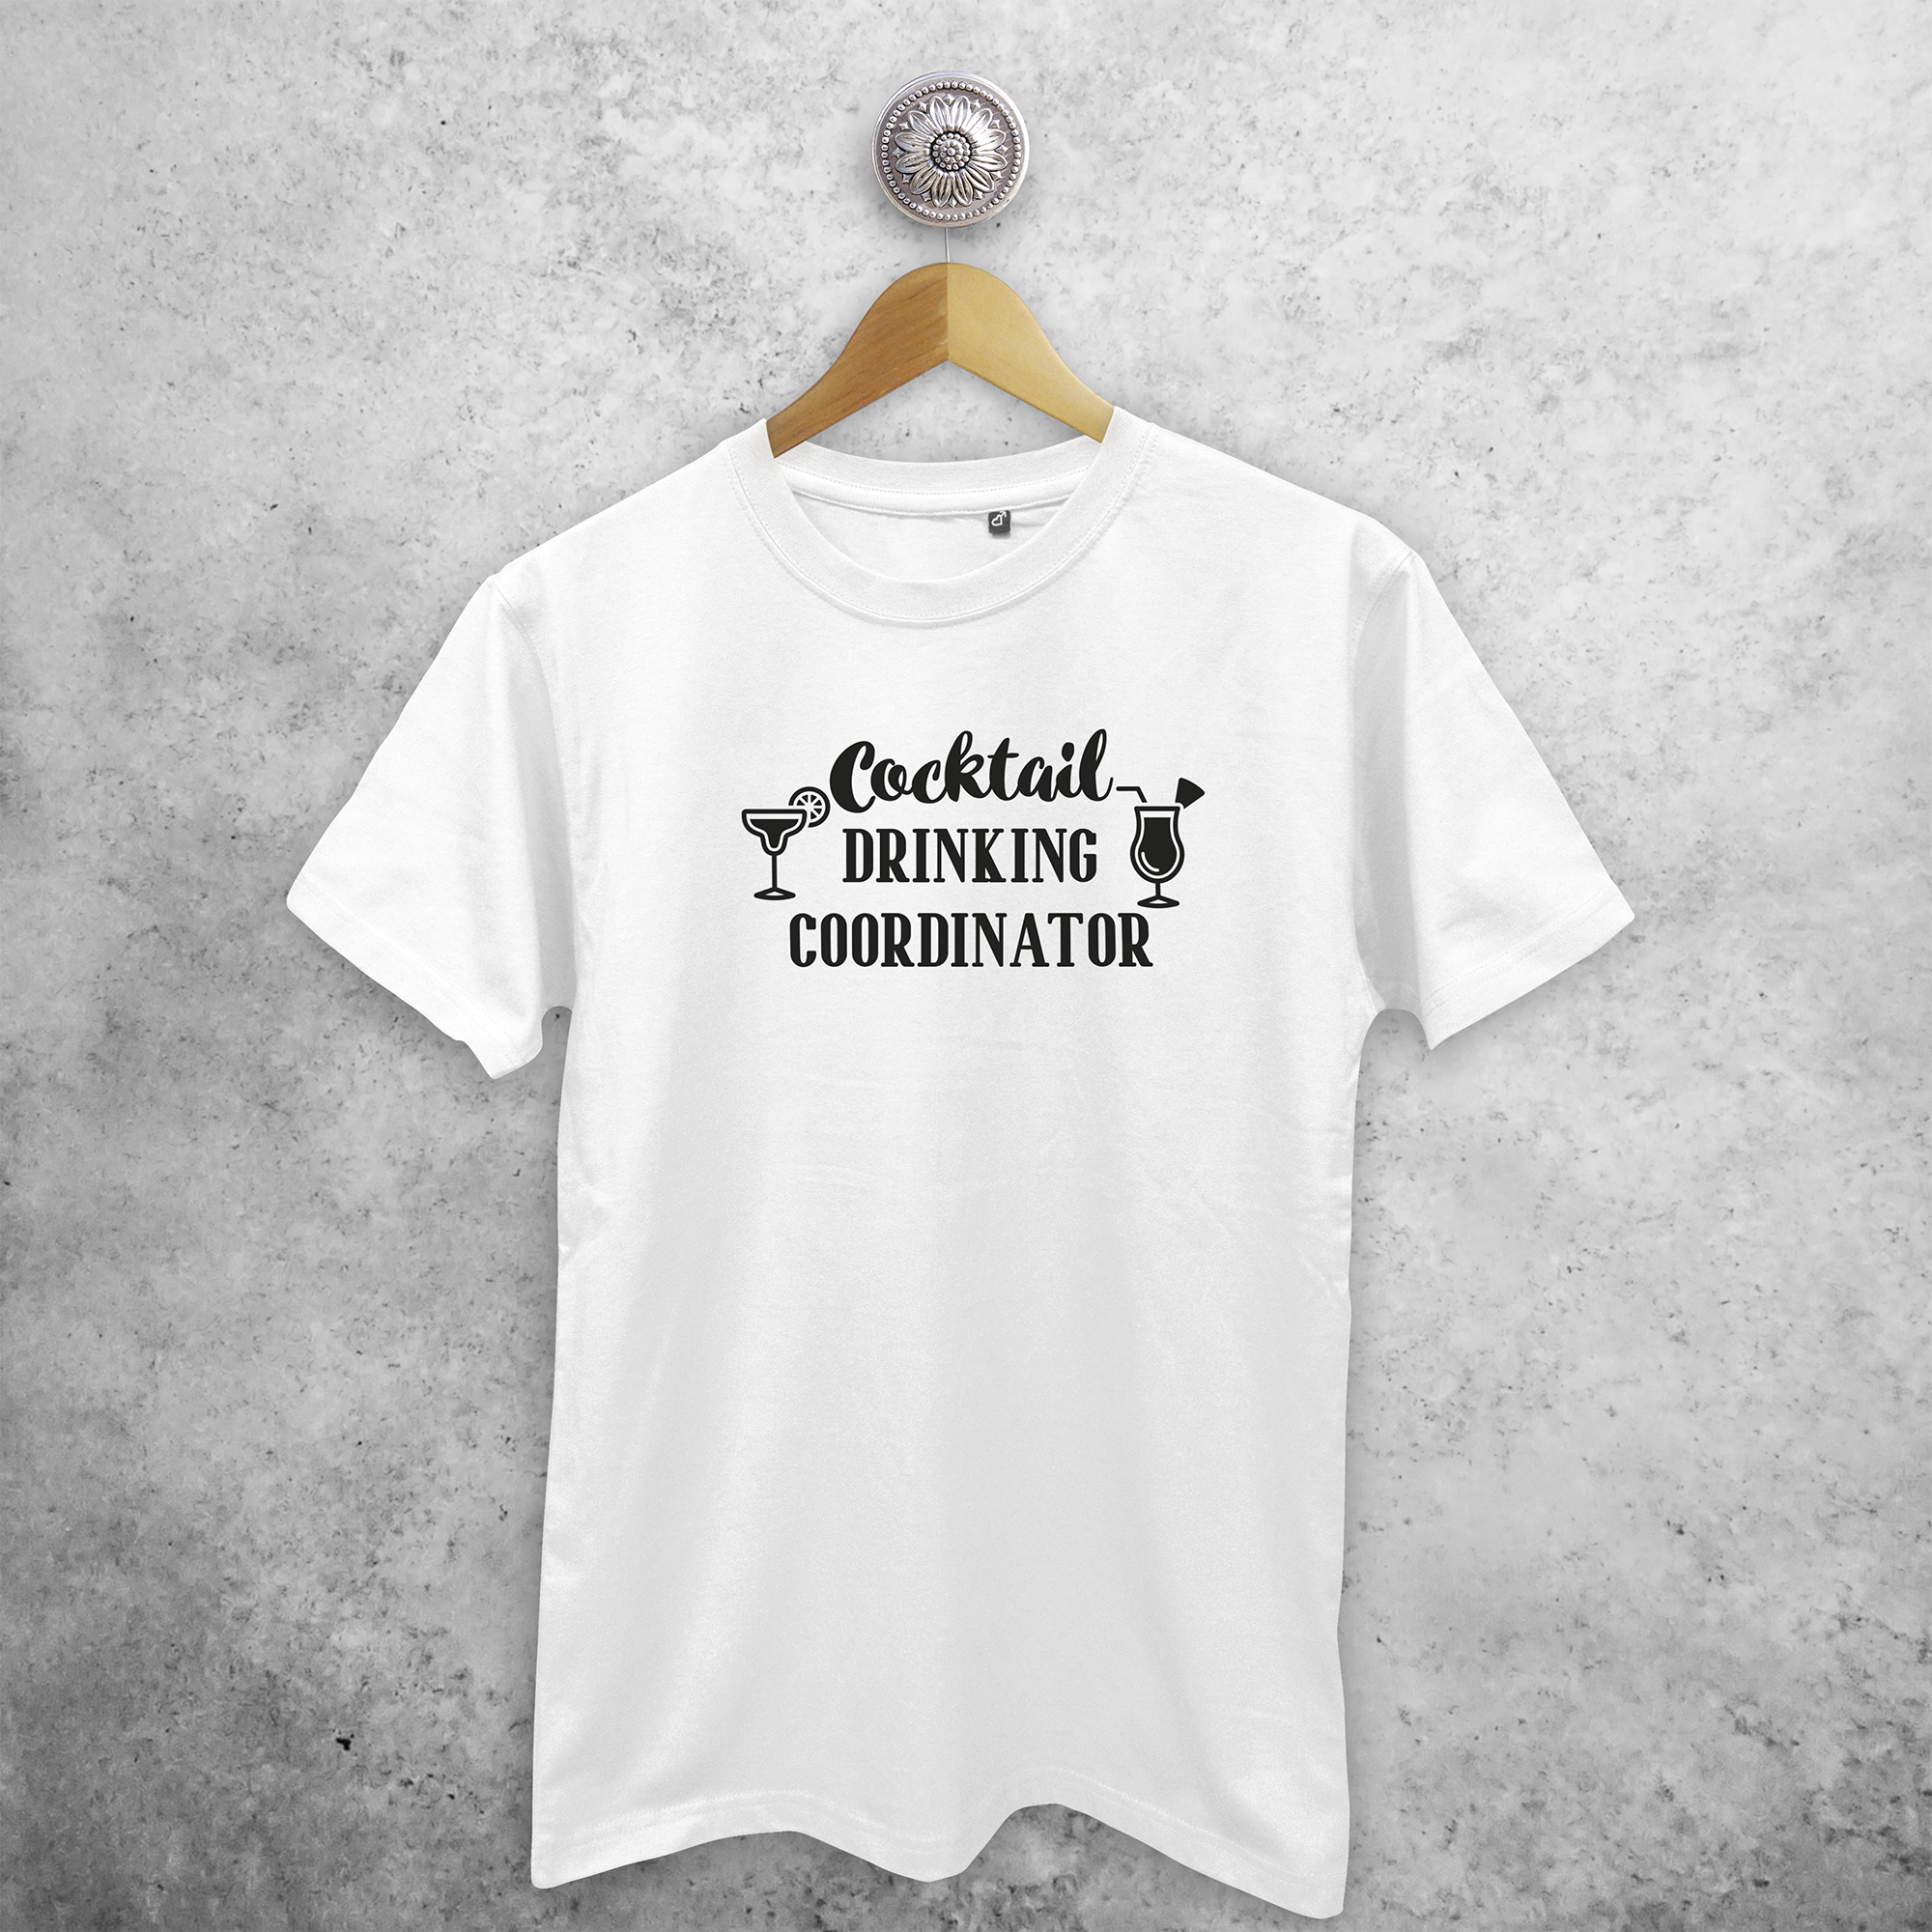 'Cocktail drinking coordinator' volwassene shirt